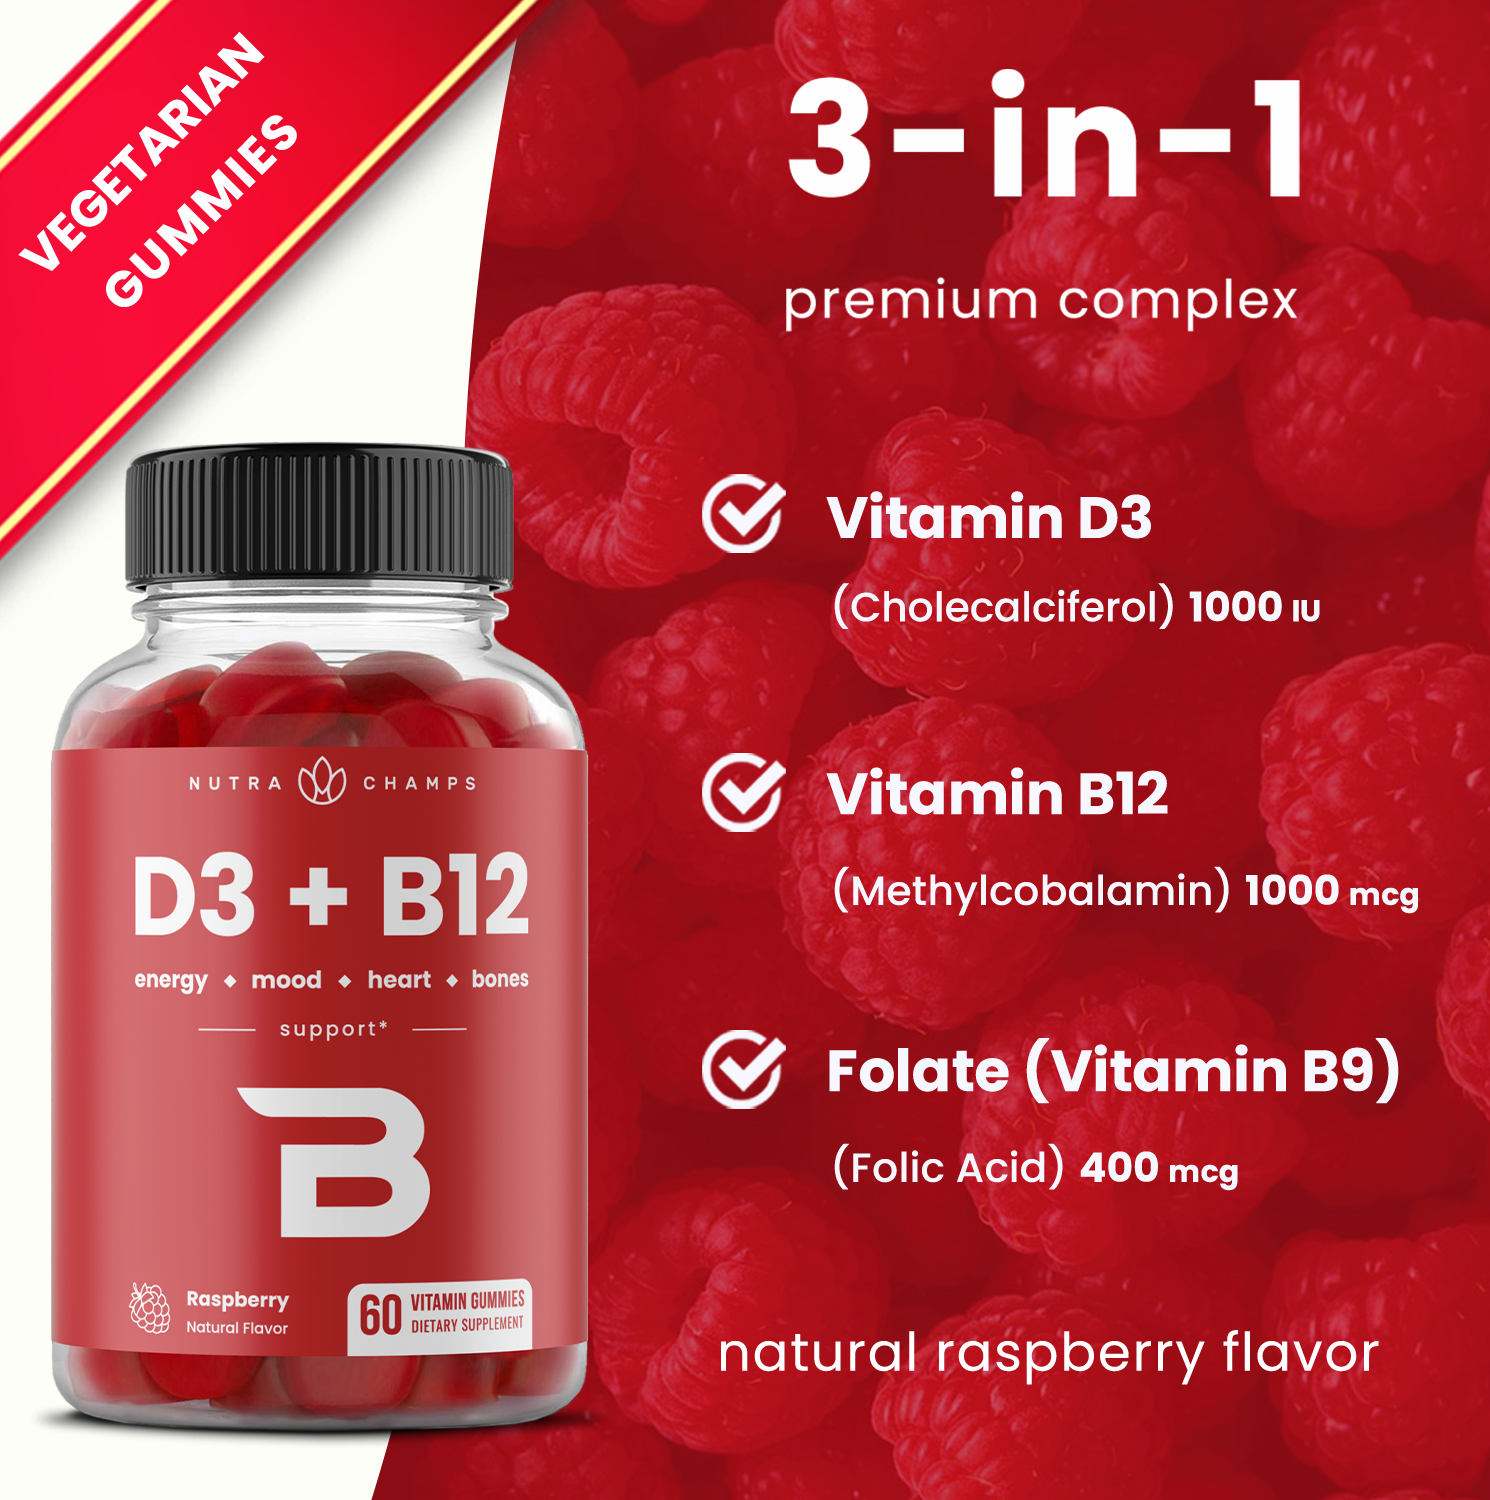 Vitamin D3 & B12 Gummies